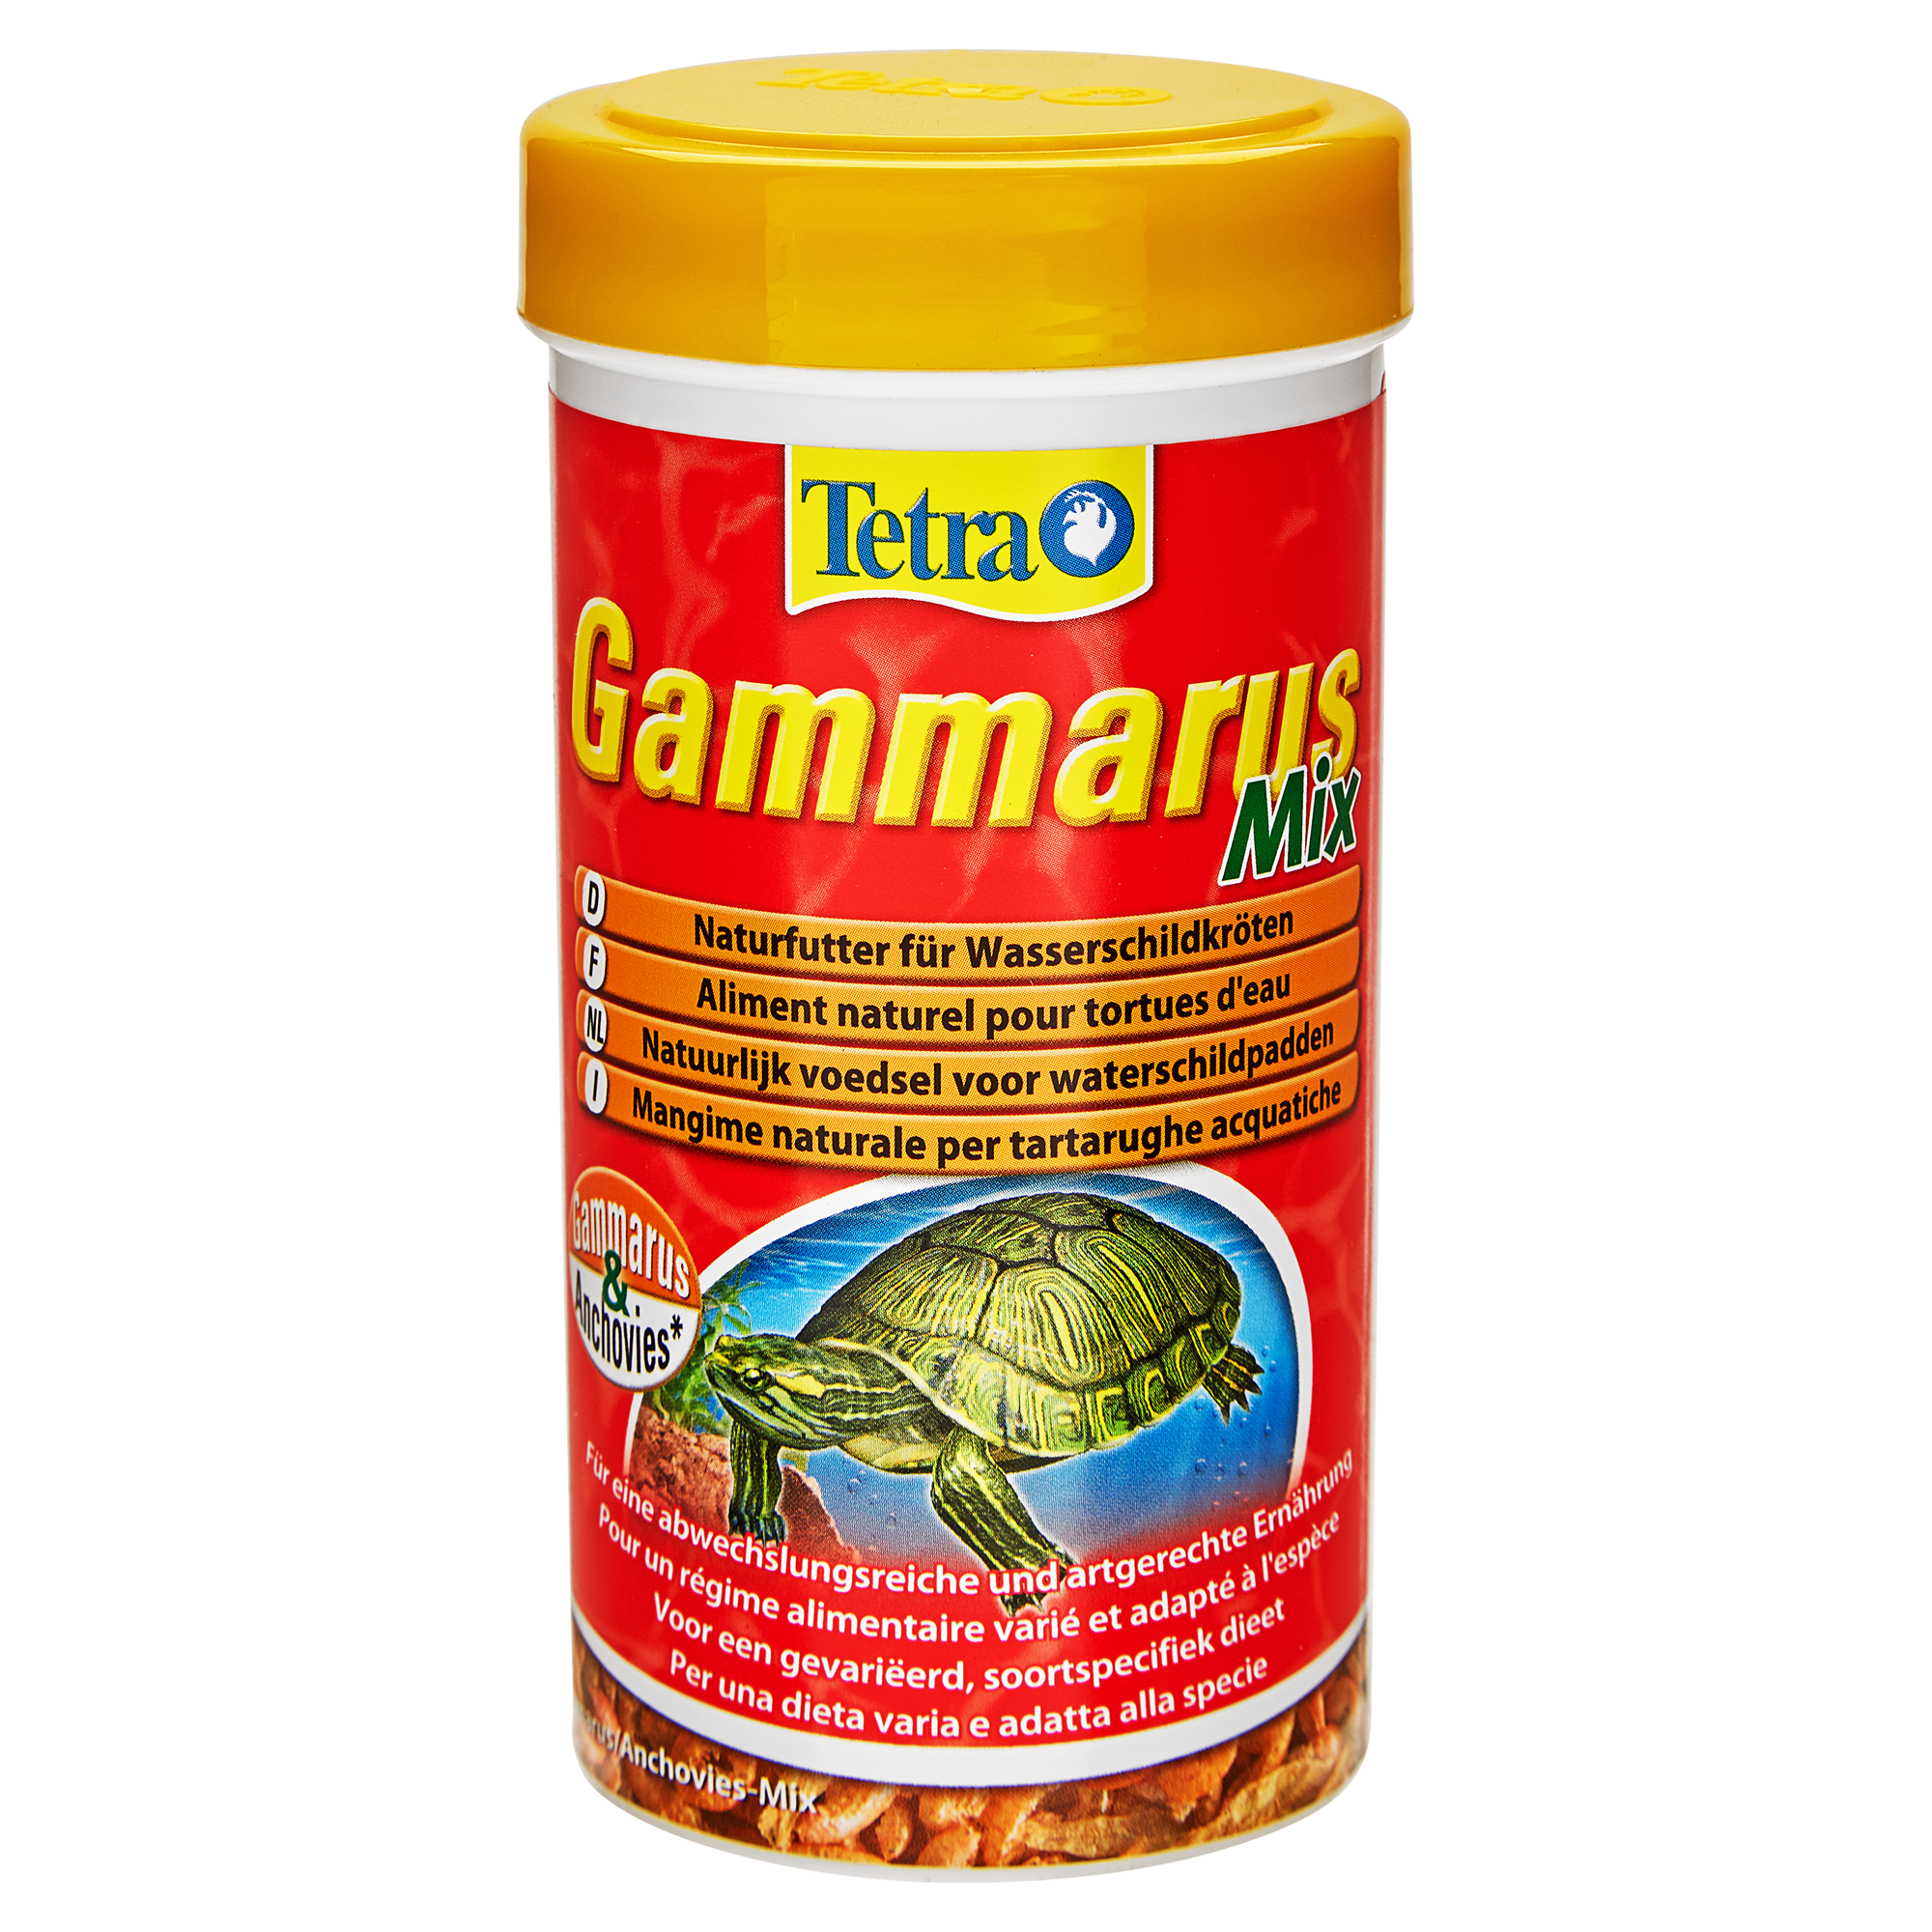 Schildkrötenfutter Gammarus Mix 25 g + product picture